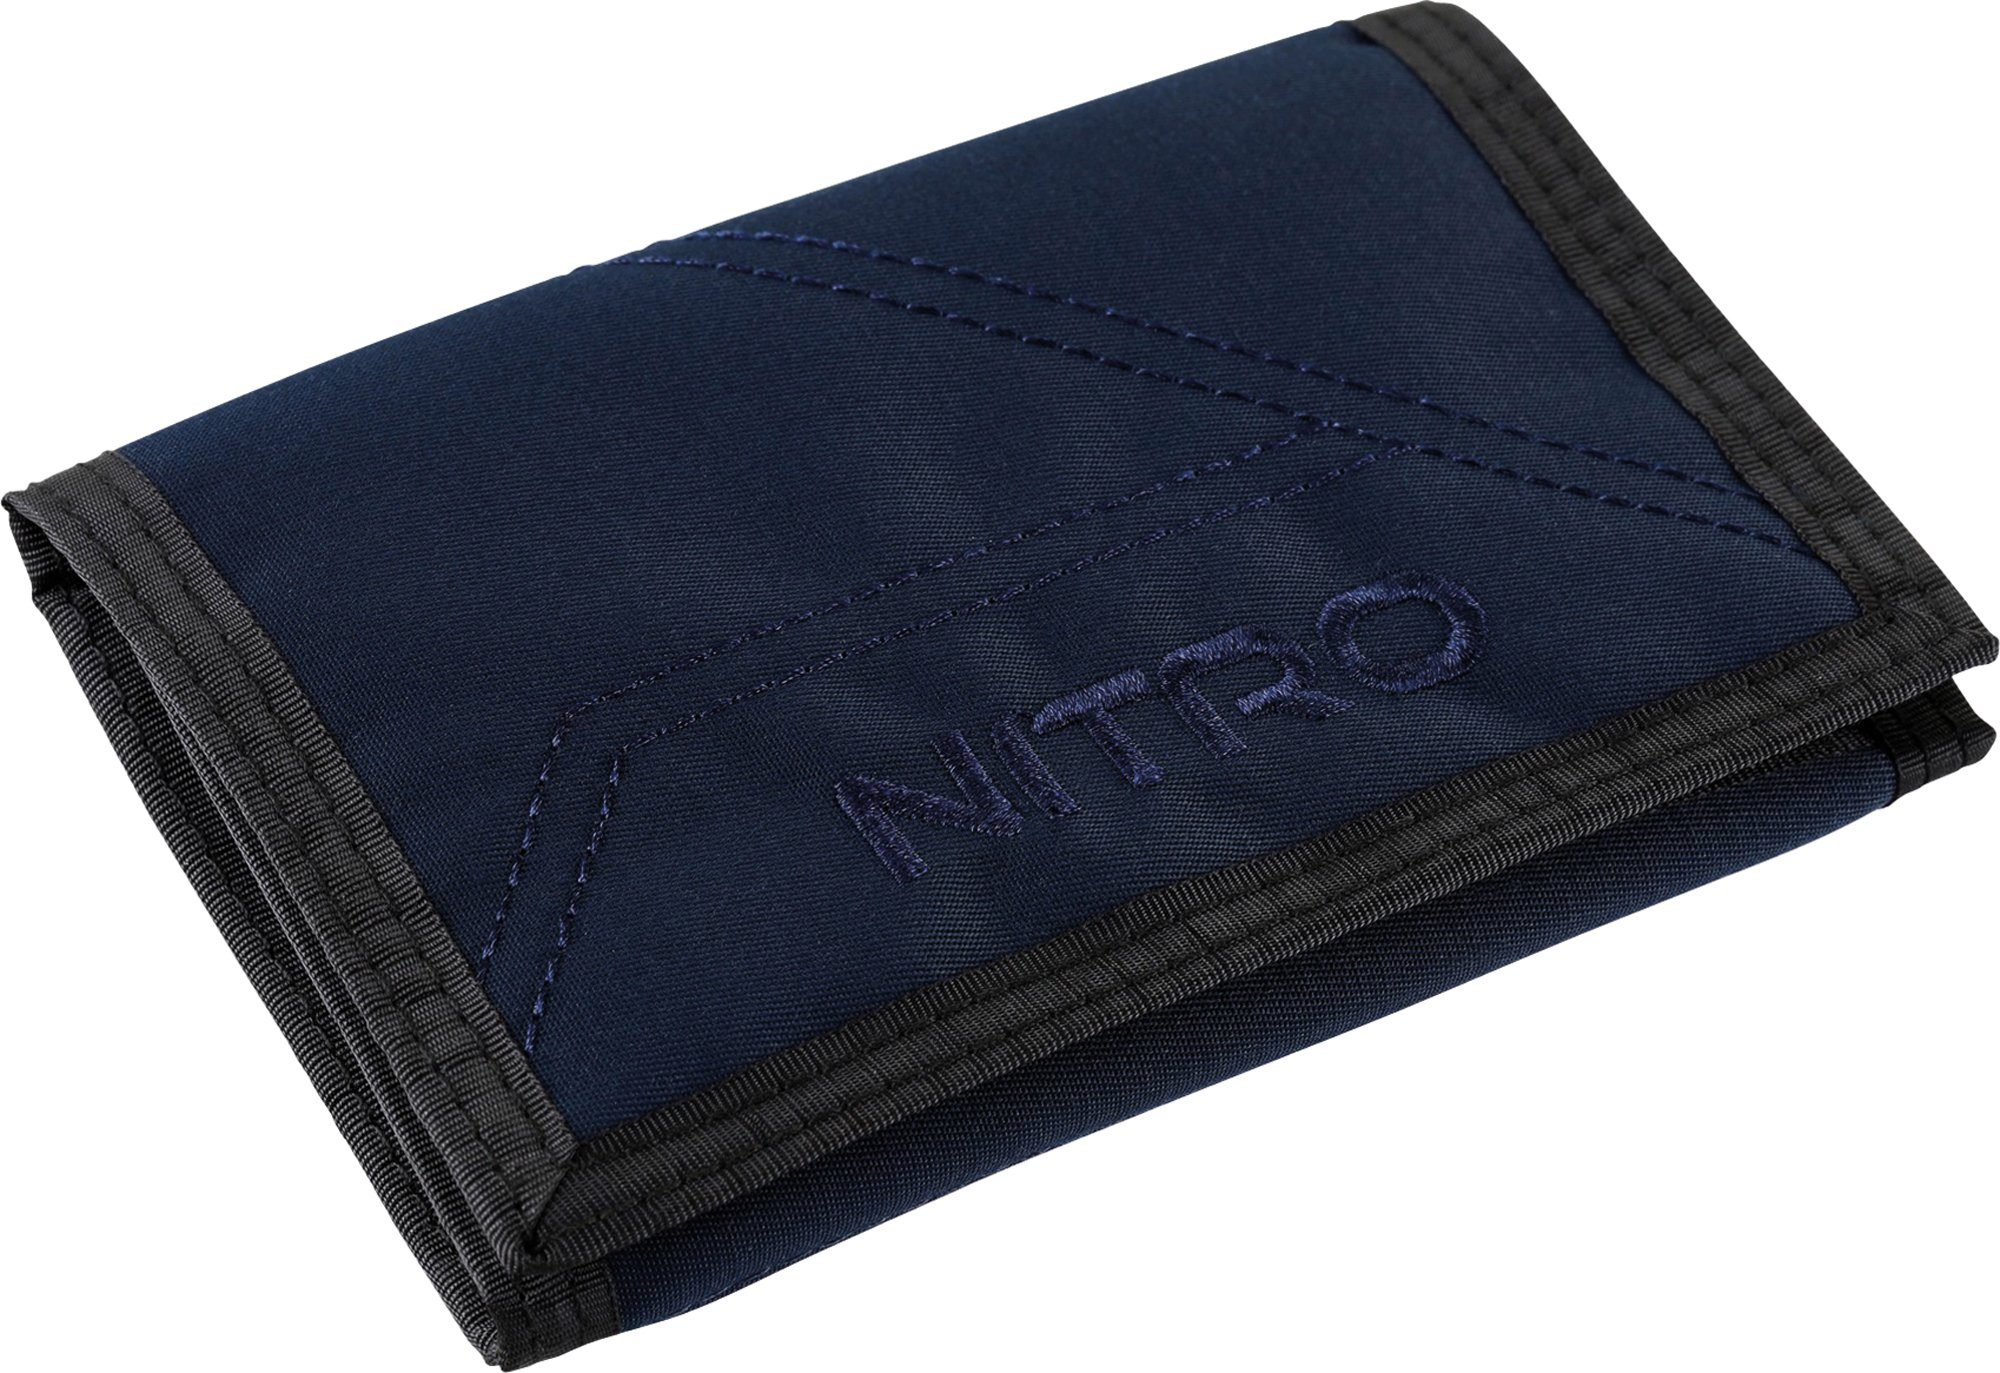 NITRO Geldbörse Wallet, Night Sky, mit Schlüsselring praktischem Night-Sky